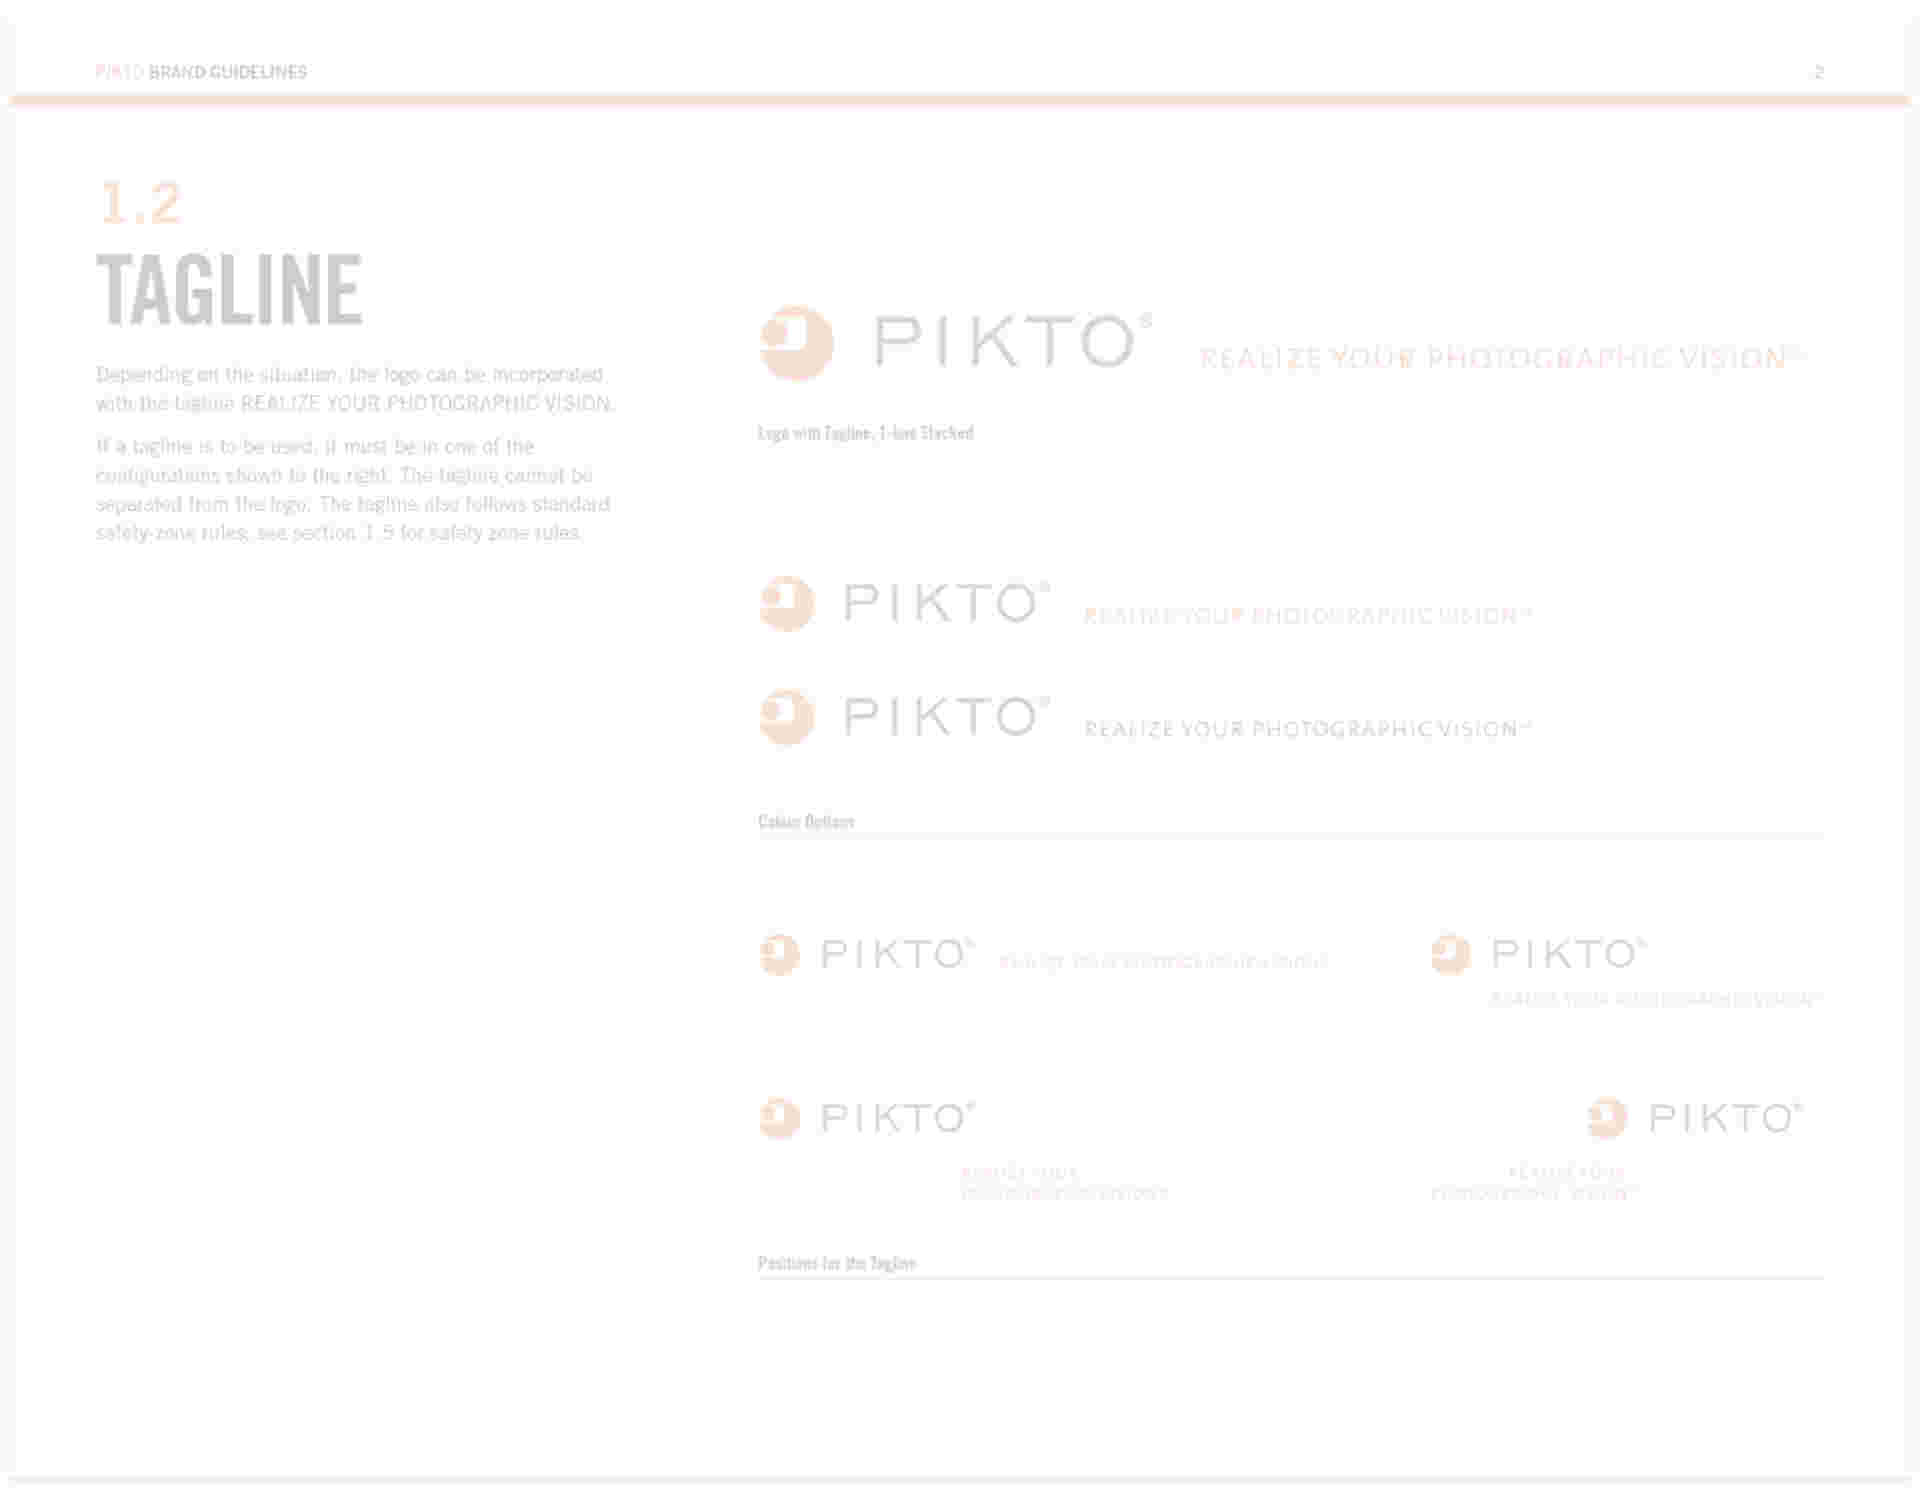 Pikto - Pikto_feature_brandguide2_6col